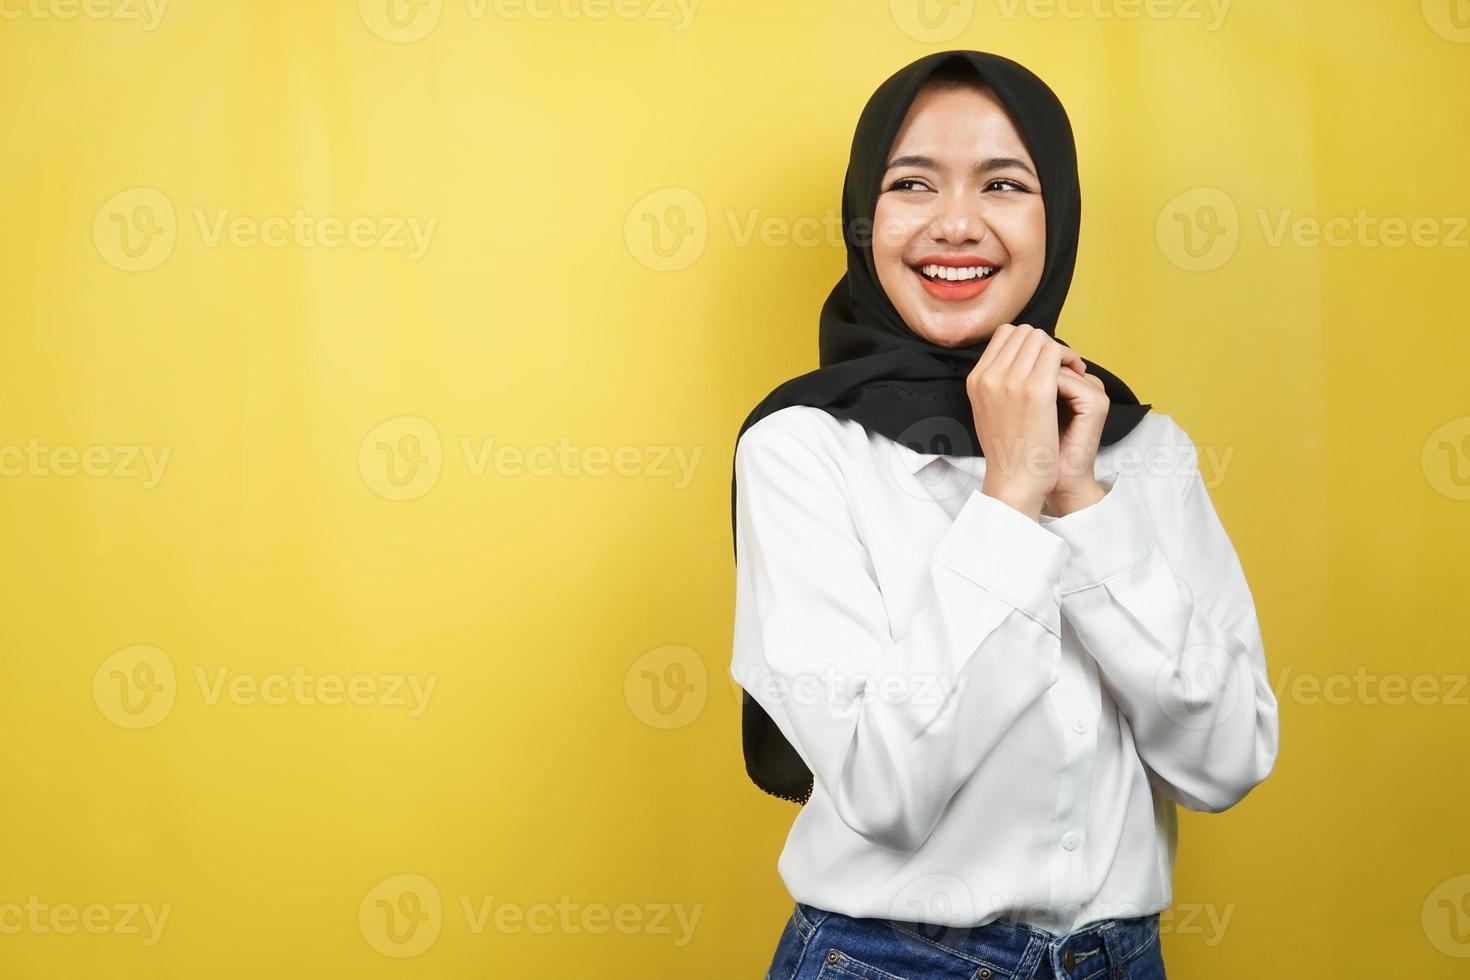 vacker ung asiatisk muslimsk kvinna som självsäker och glad ser tomt utrymme presenterar något, isolerad på gul bakgrund foto